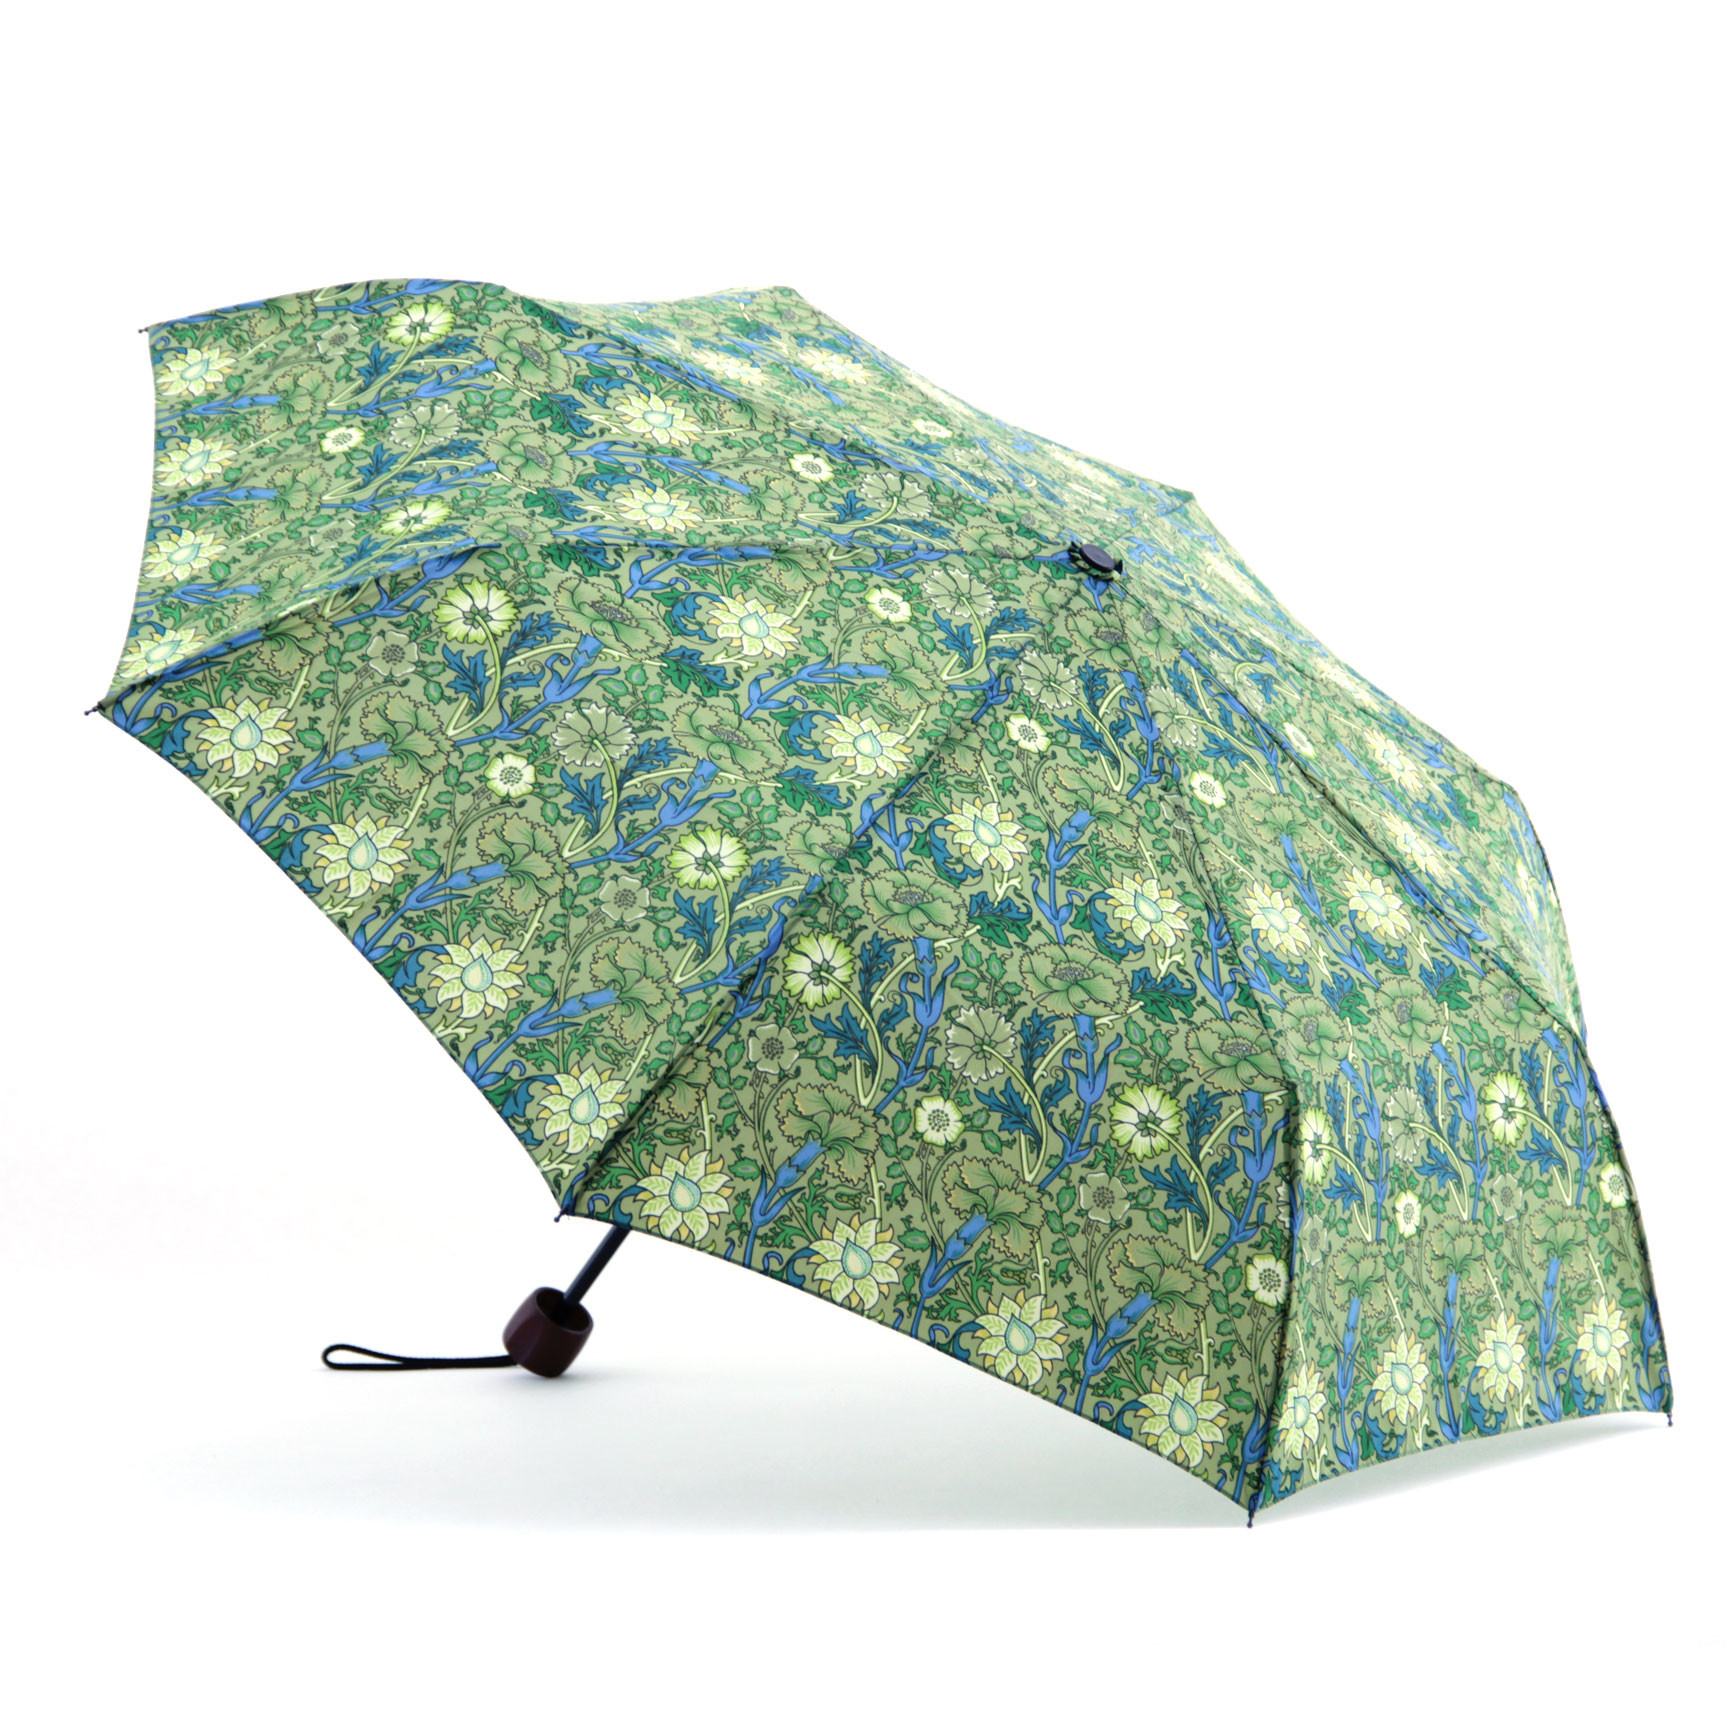  Printed Flat Mini Manual Open Umbrella , Easy Open Close Umbrella Plastic Handle Manufactures